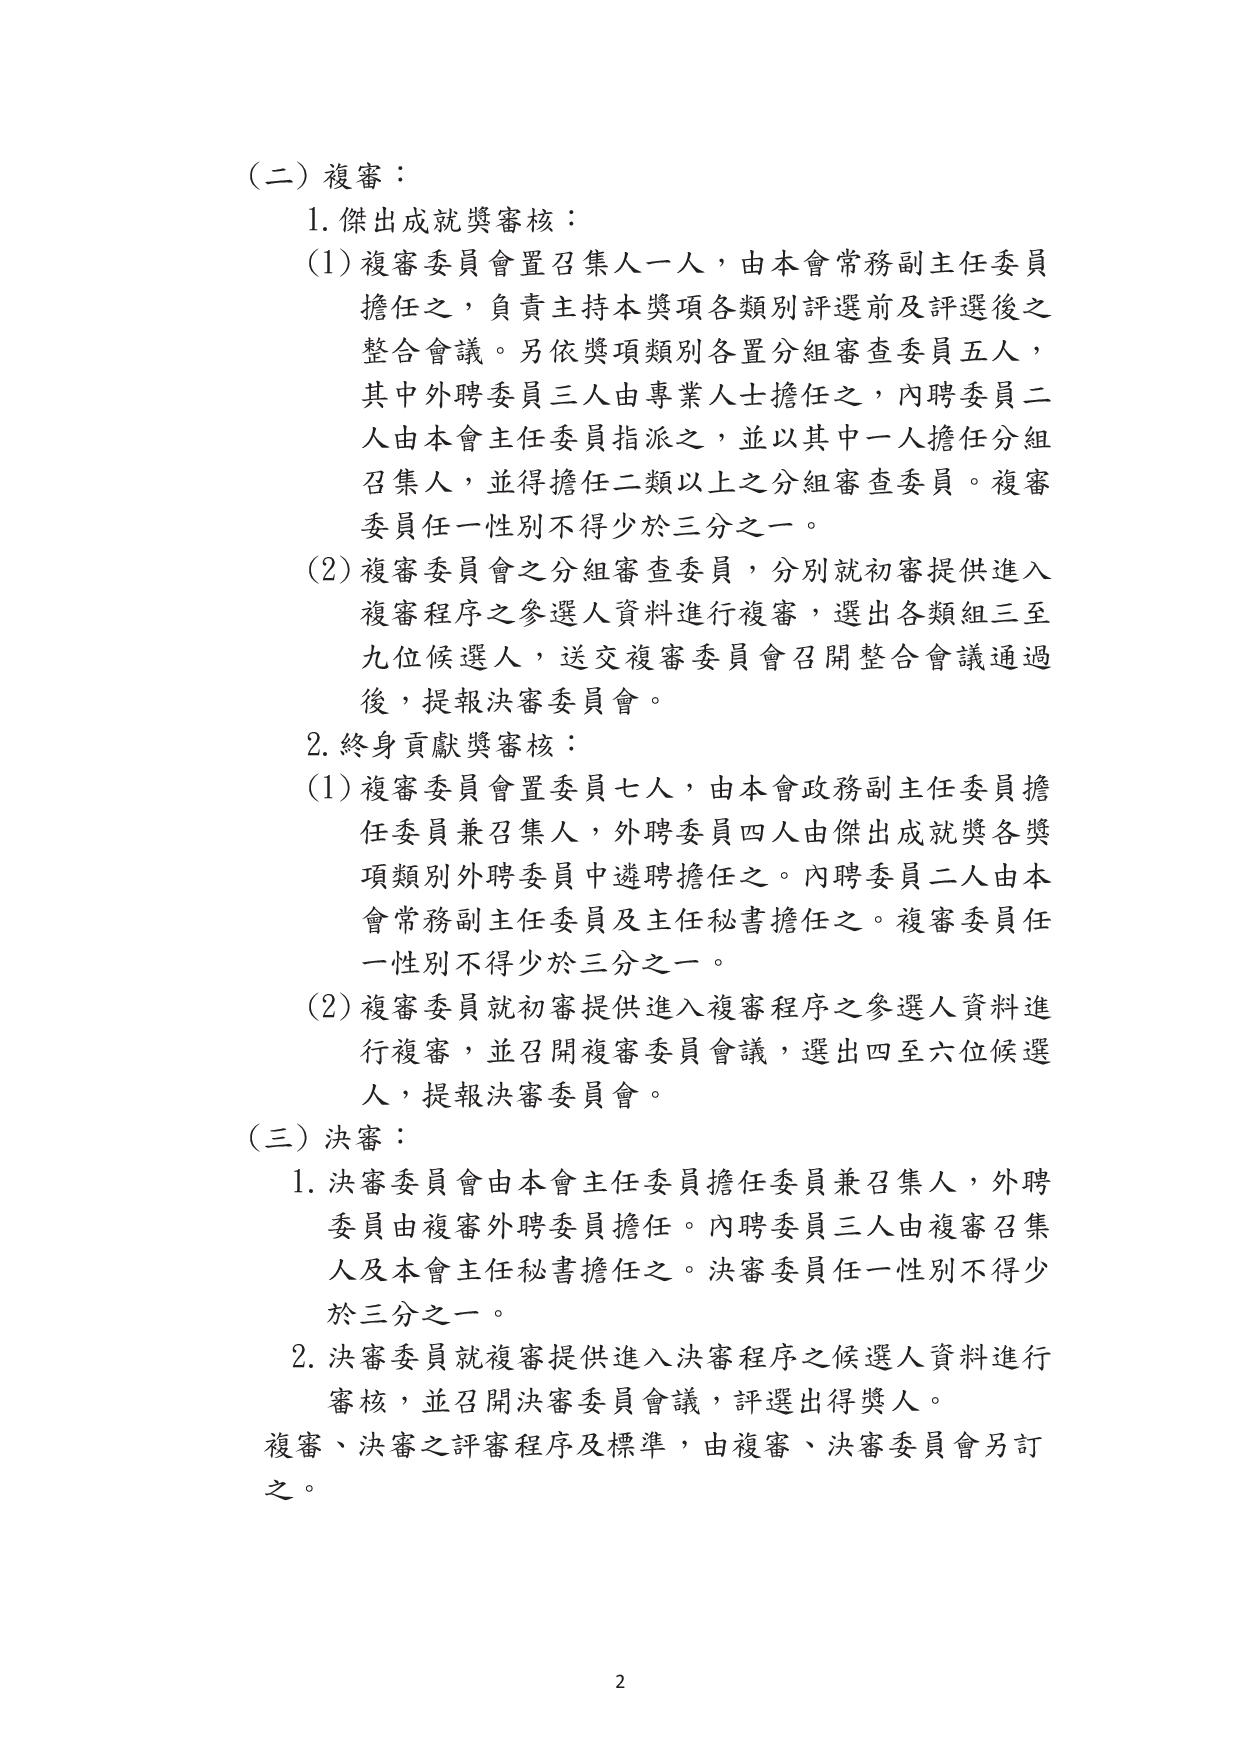 客家委員會修正「客家委員會客家貢獻獎頒給要點」第3點、第7點，自中華民國112年2月7日生效